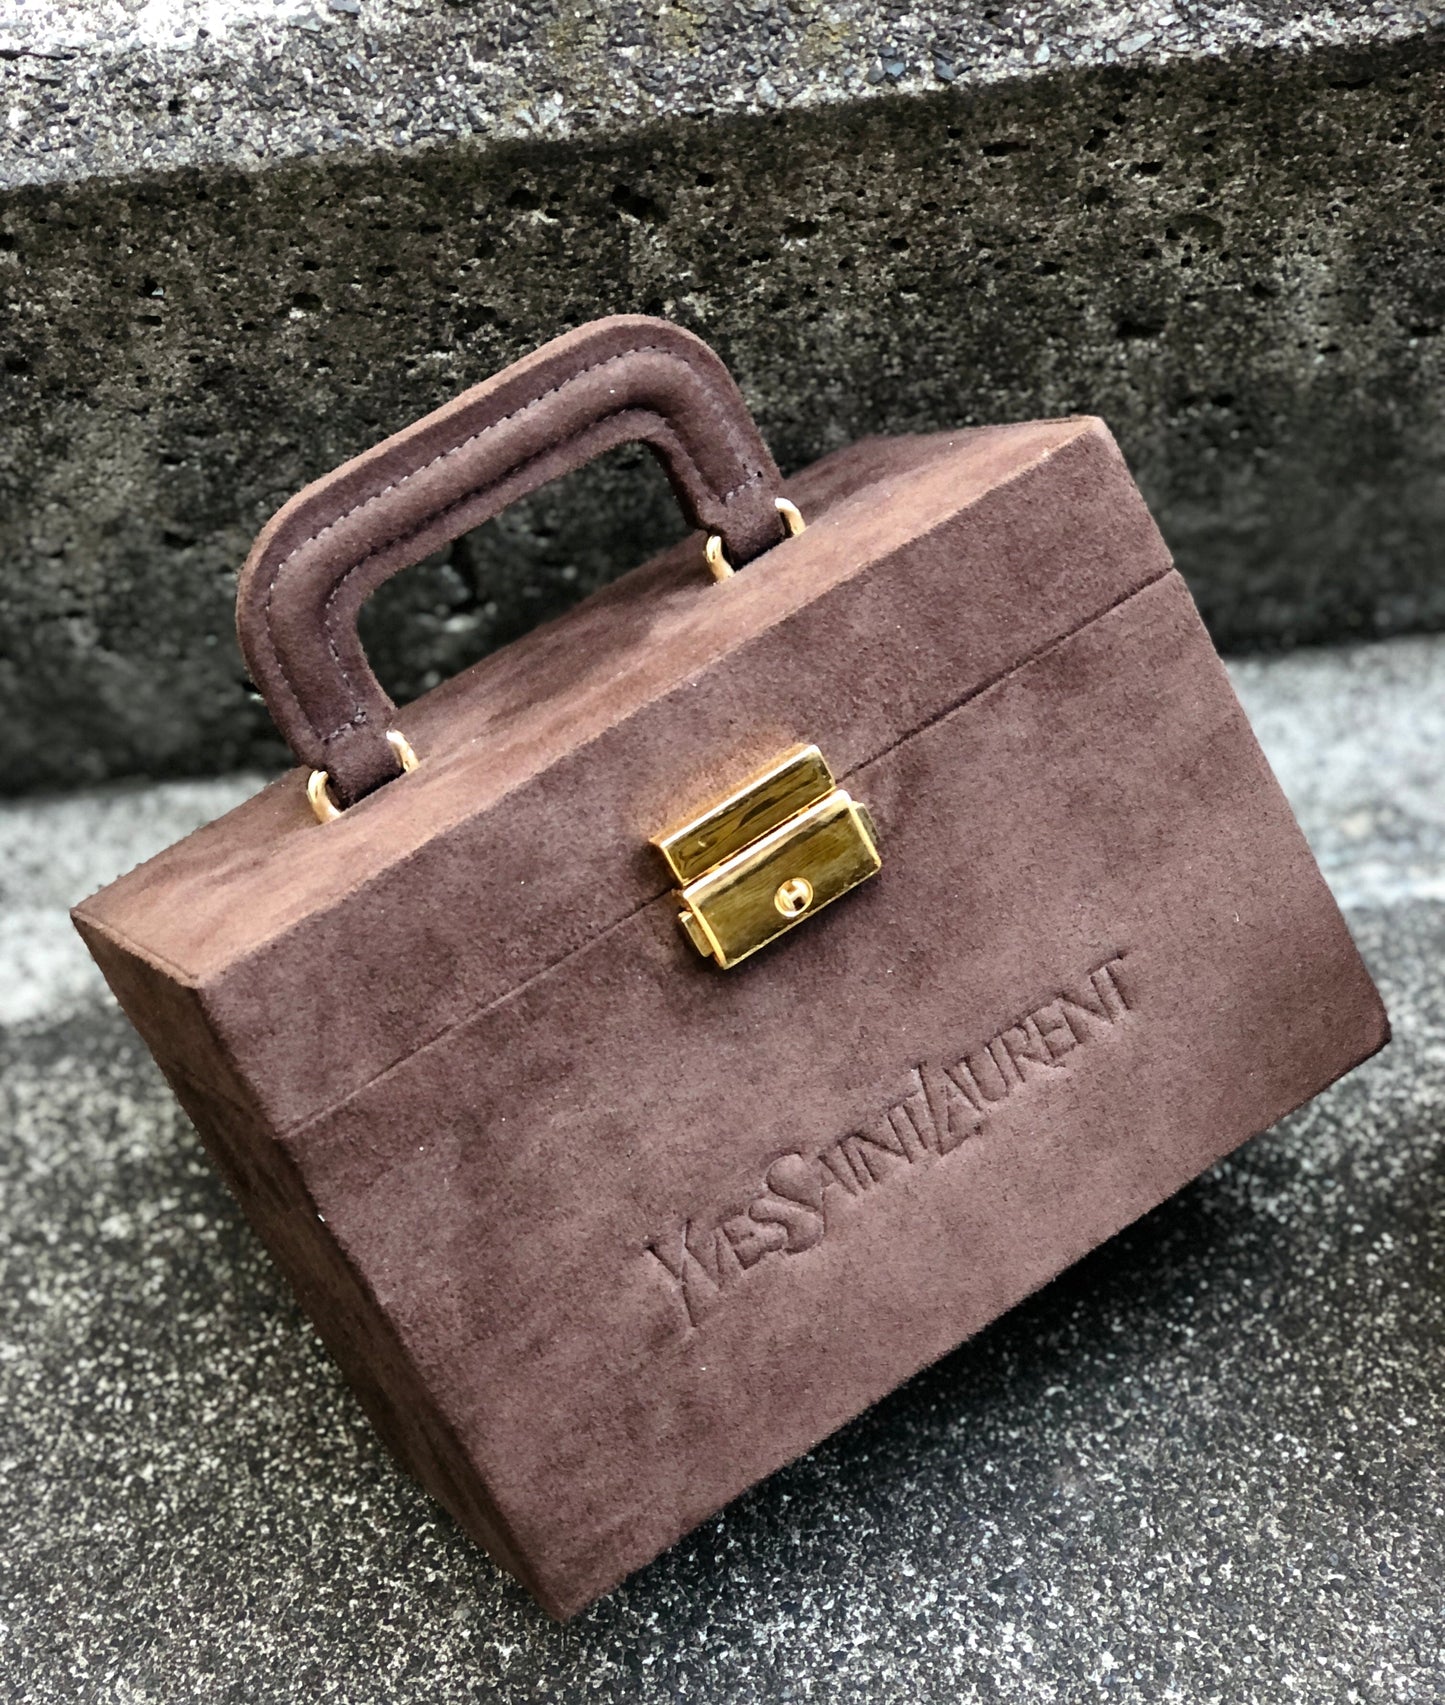 Yves Saint Laurent Logo embossed Suede Vanity bag Handbag Brown Vintage Old YSL vhfxdu